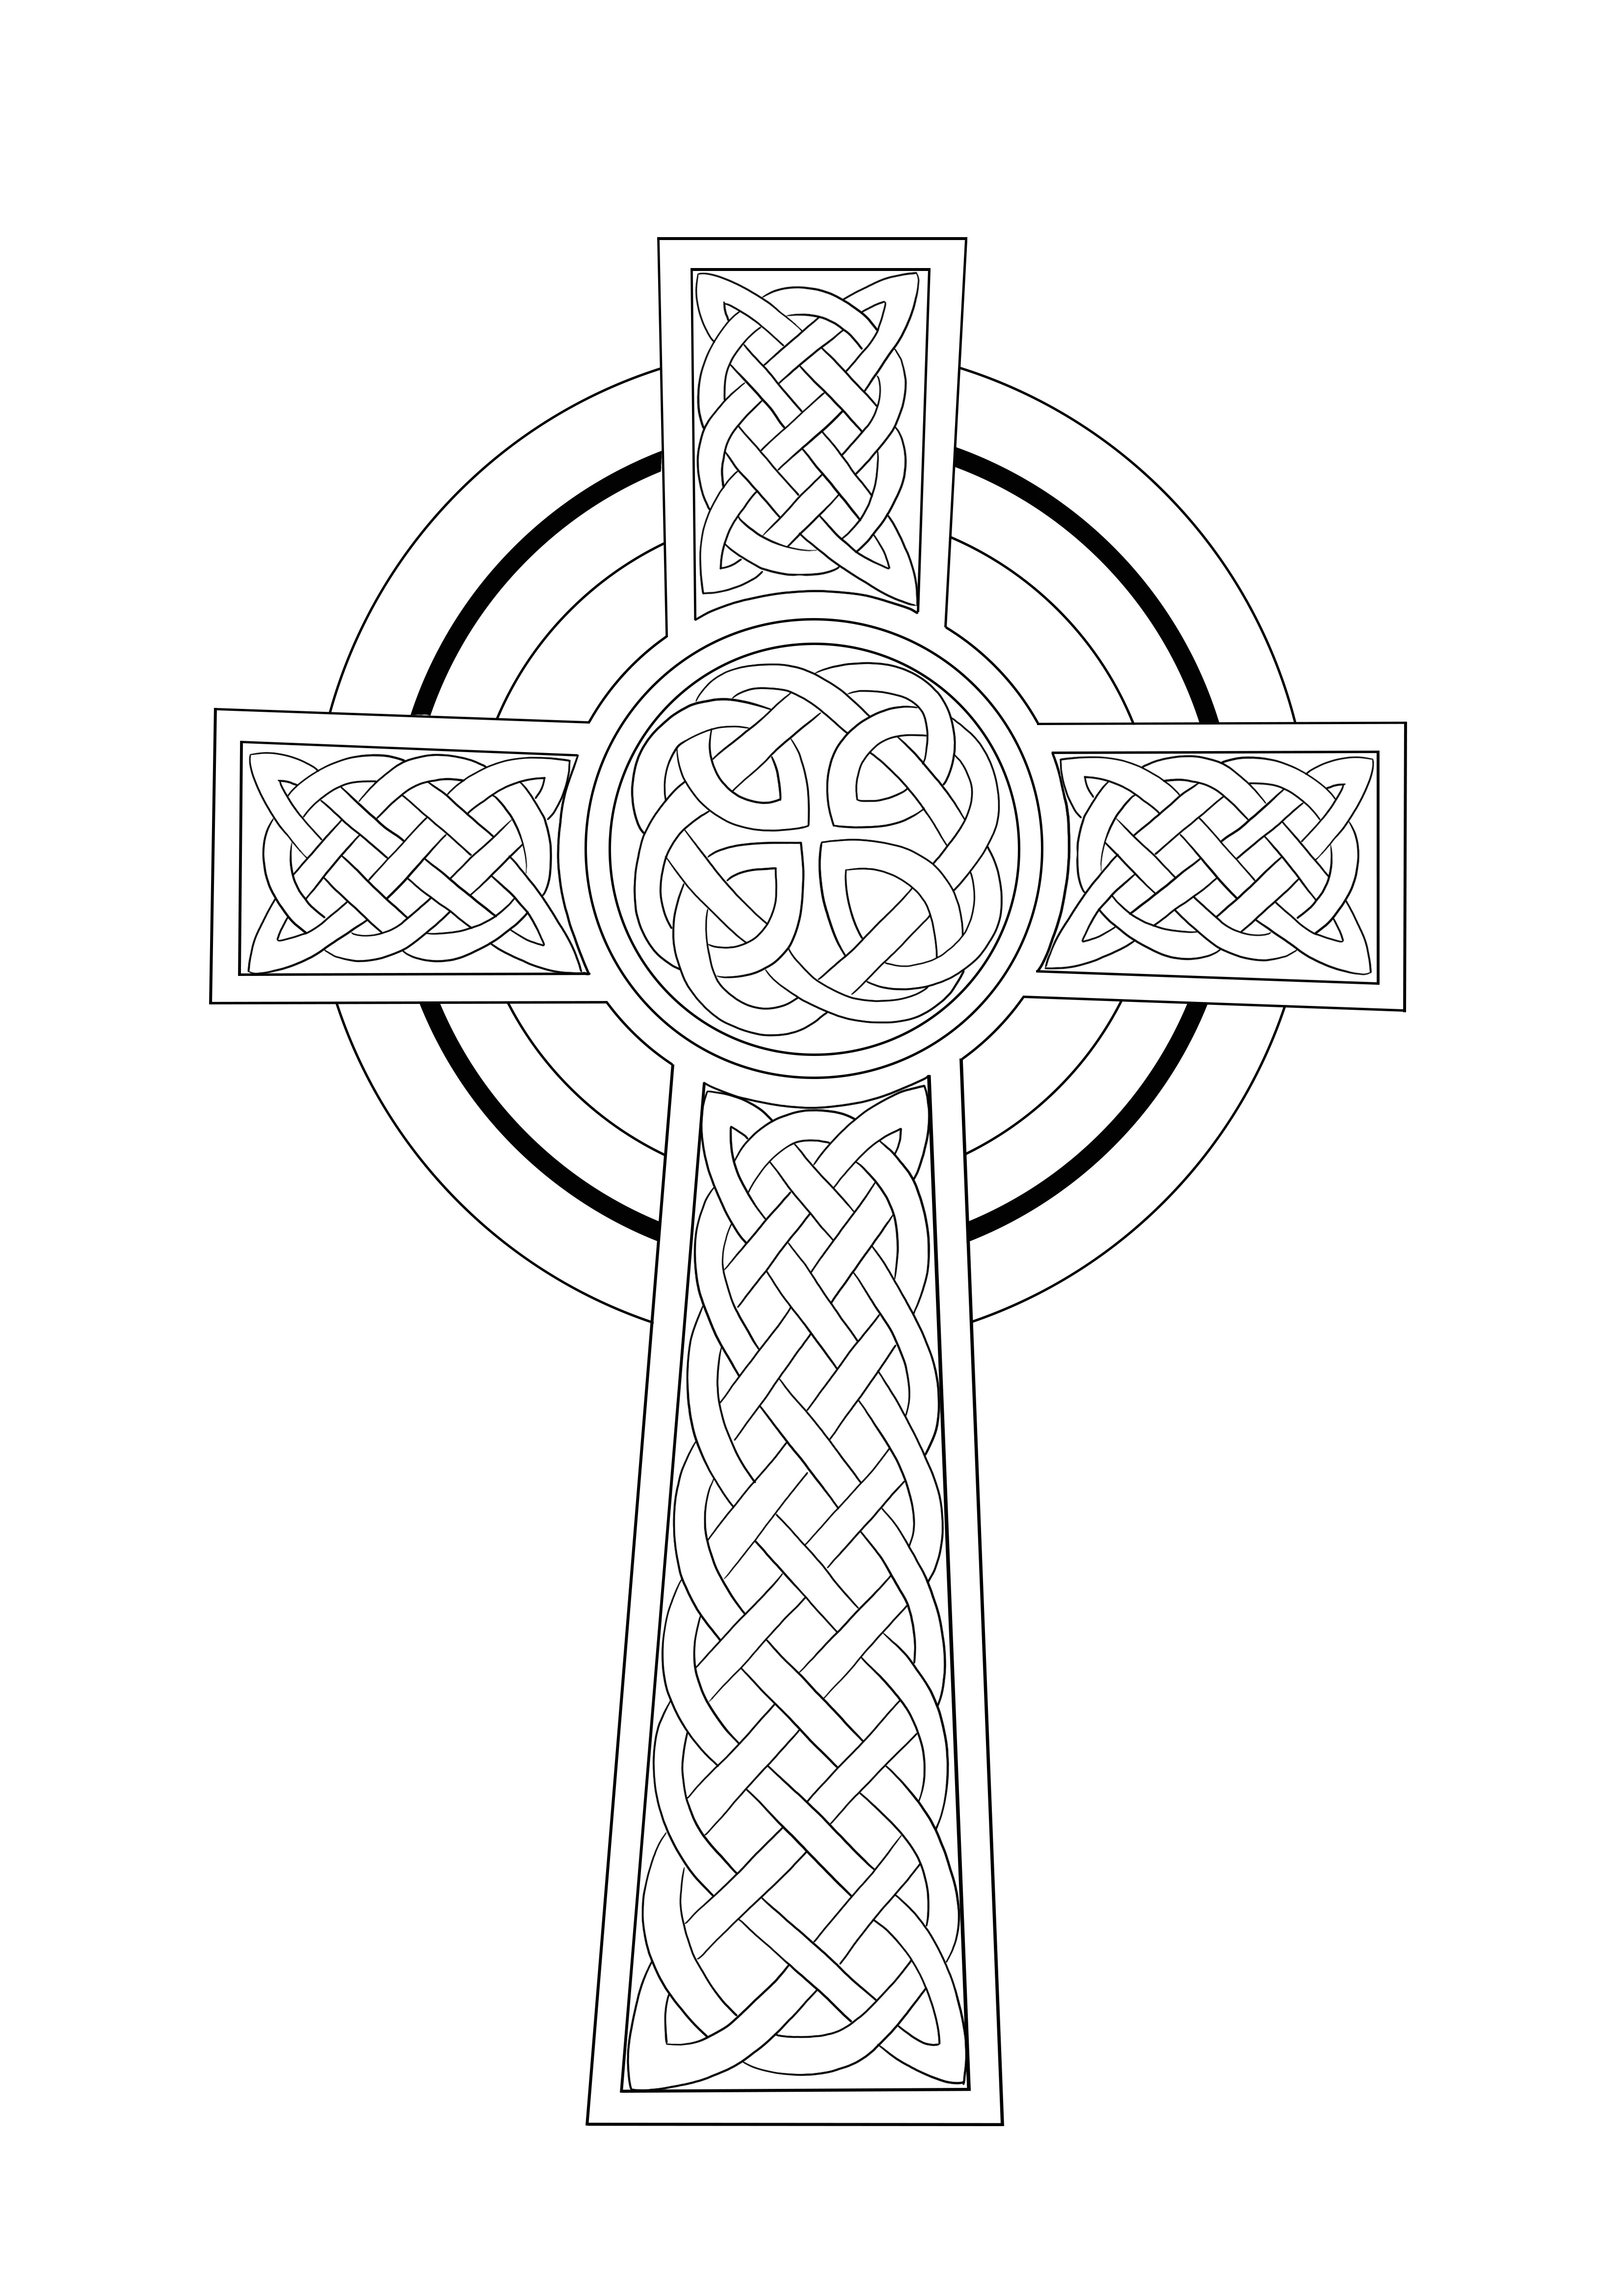 Keltisch kruis kleurplaat gratis te downloaden of op te slaan voor later kleurplaat